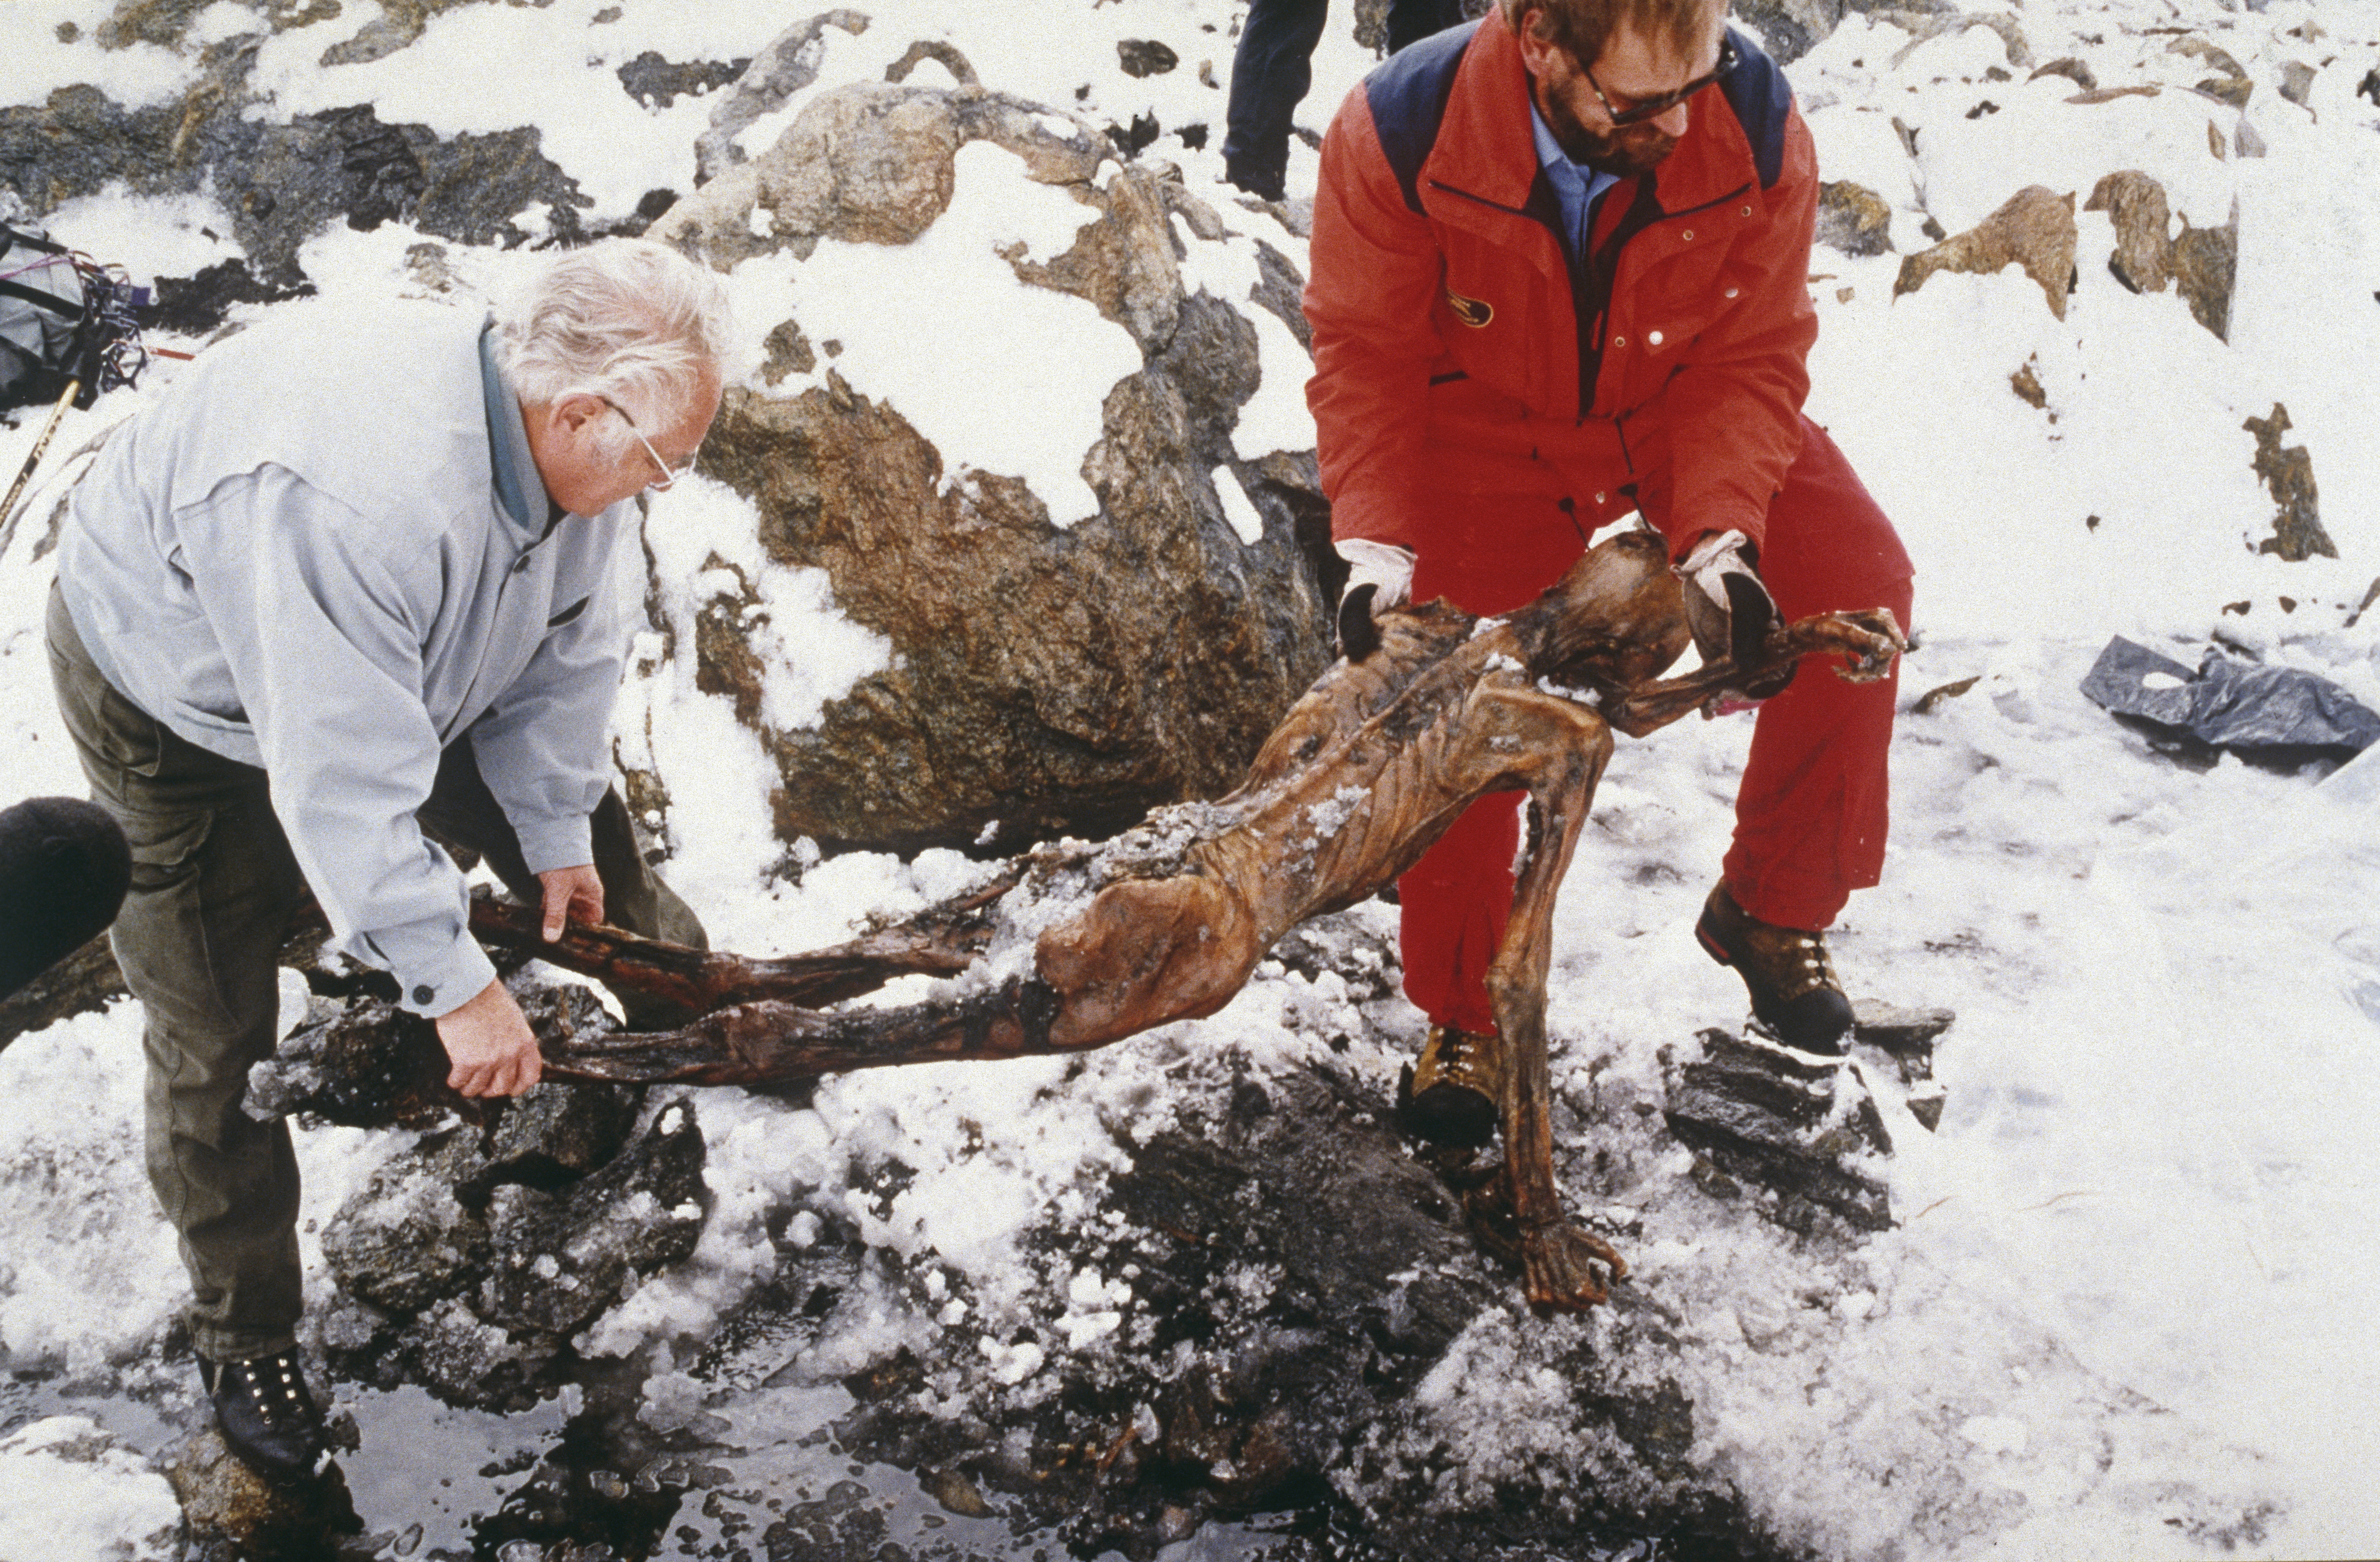 El cuerpo momificado fue encontrado por excursionistas en el glaciar Similaun a 3200 metros de altura, en los Alpes de Ötzal, en Italia, a 92 metros de la frontera con Austria. Ötzil, comobautizaron al hombre de hielo, medía 1,52 metros (Leopold Nekula/Sygma via Getty Images)